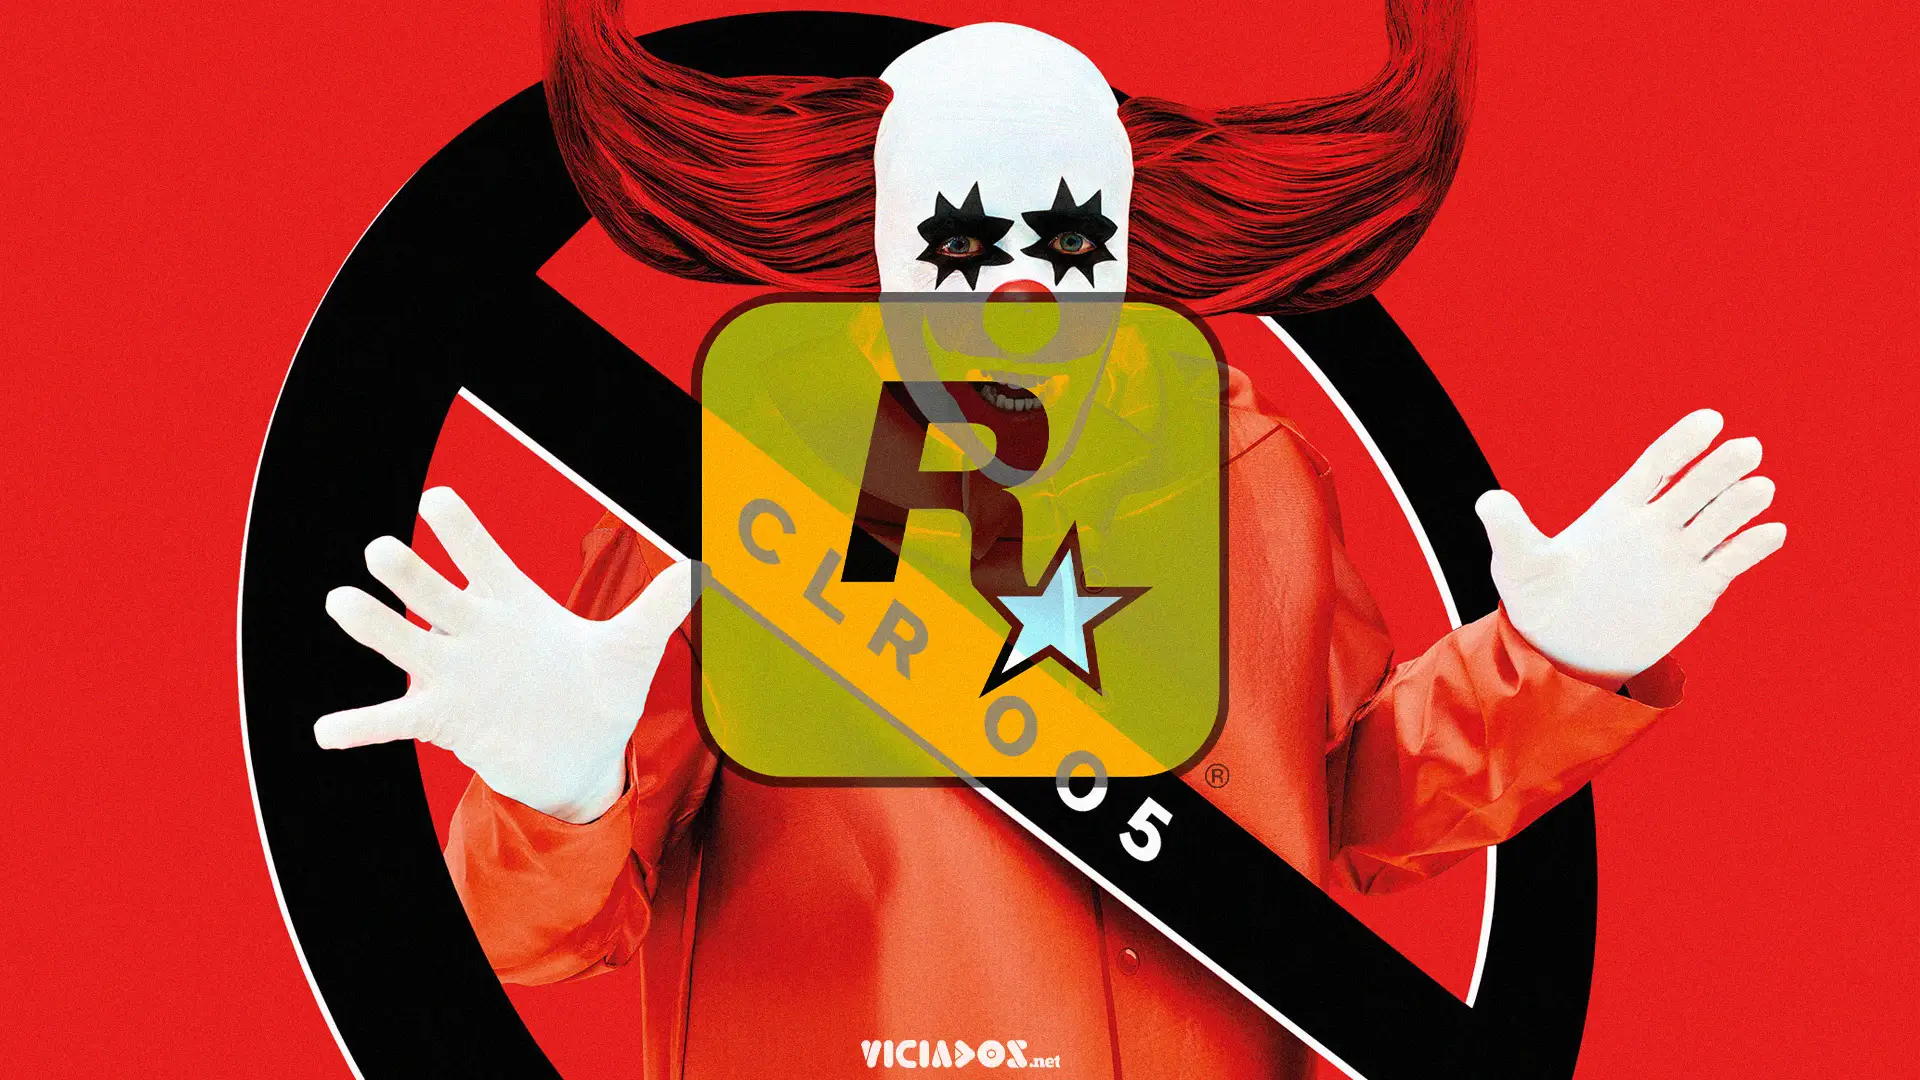 CircoLoco Records | Rockstar Games apresenta novo single com IZA, do Map.ache 2022 Viciados